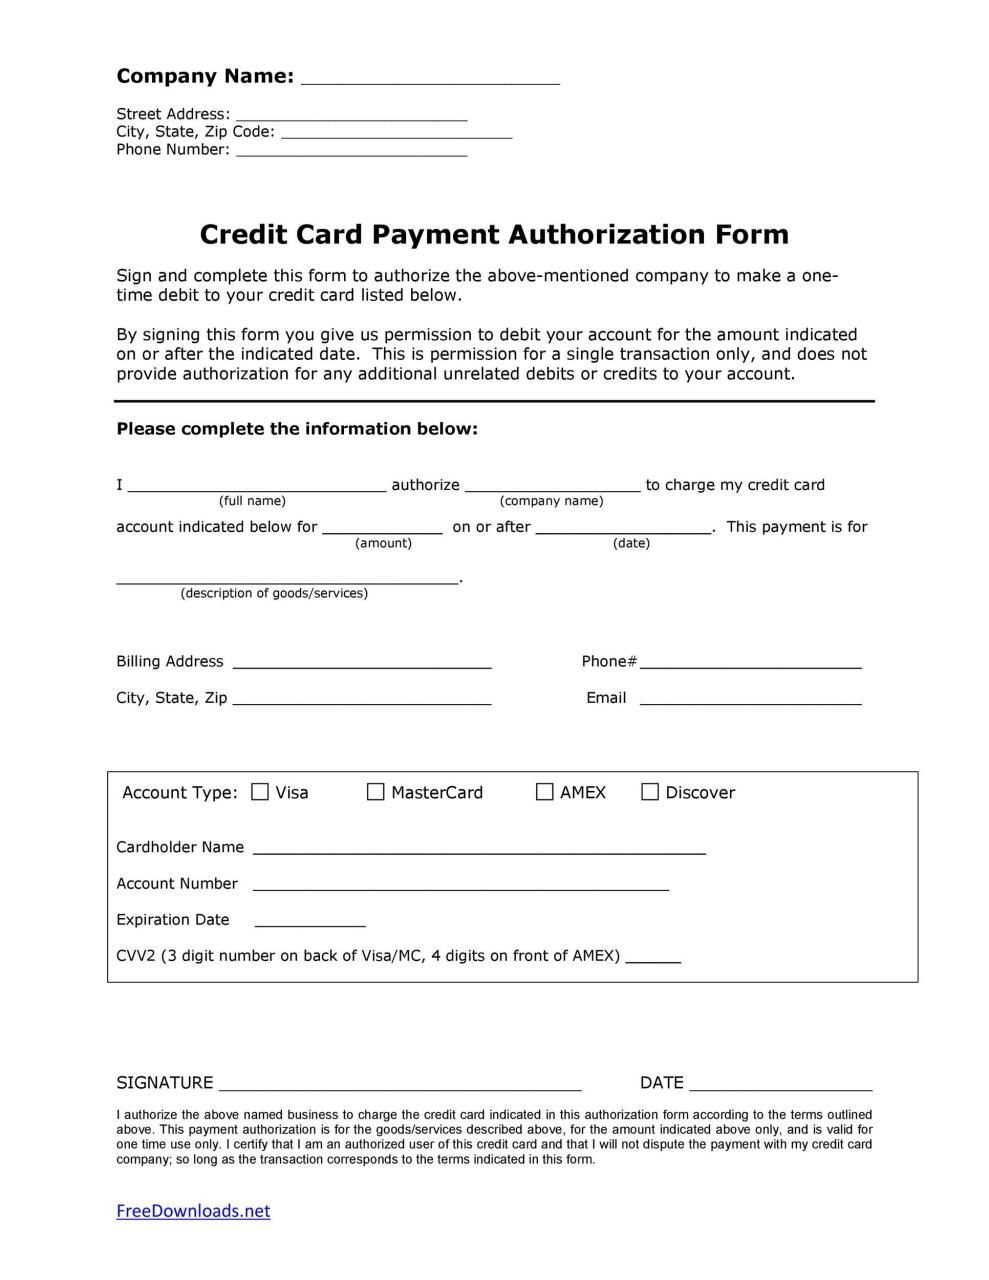 Plantilla de formulario de autorización de tarjeta de crédito gratis 19